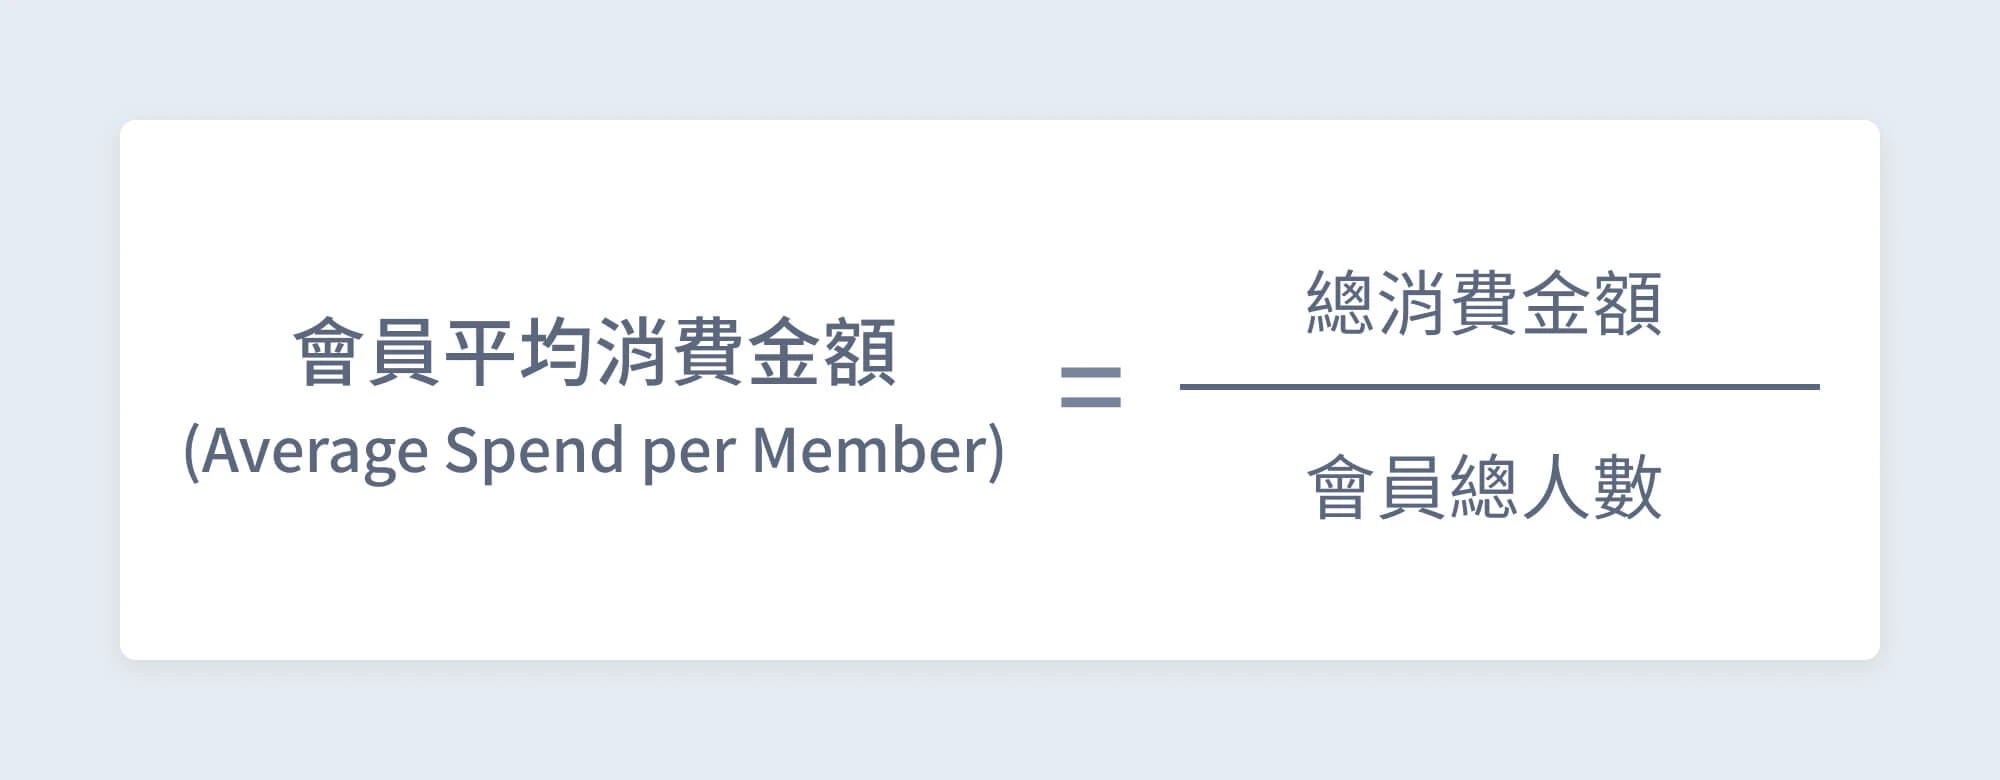 會員平均消費金額 ( Average Spend per Member ) 計算公式